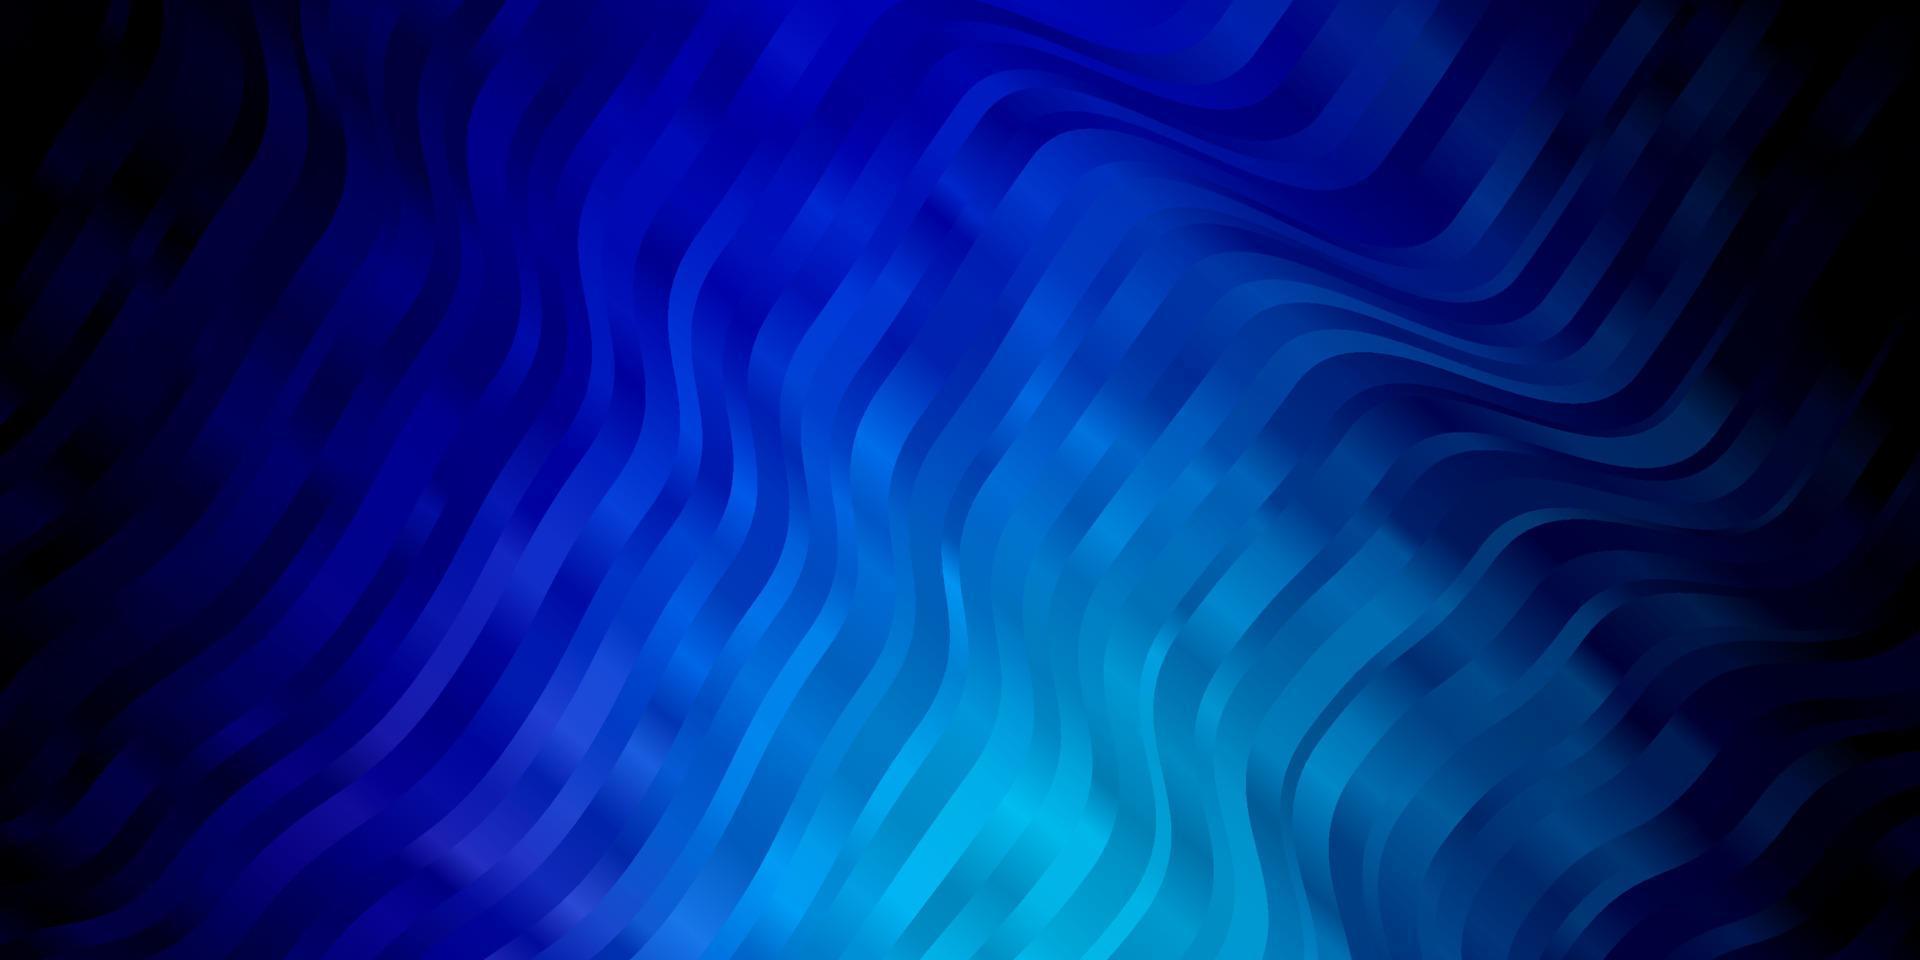 donkerroze, blauwe vector sjabloon met wrange lijnen.